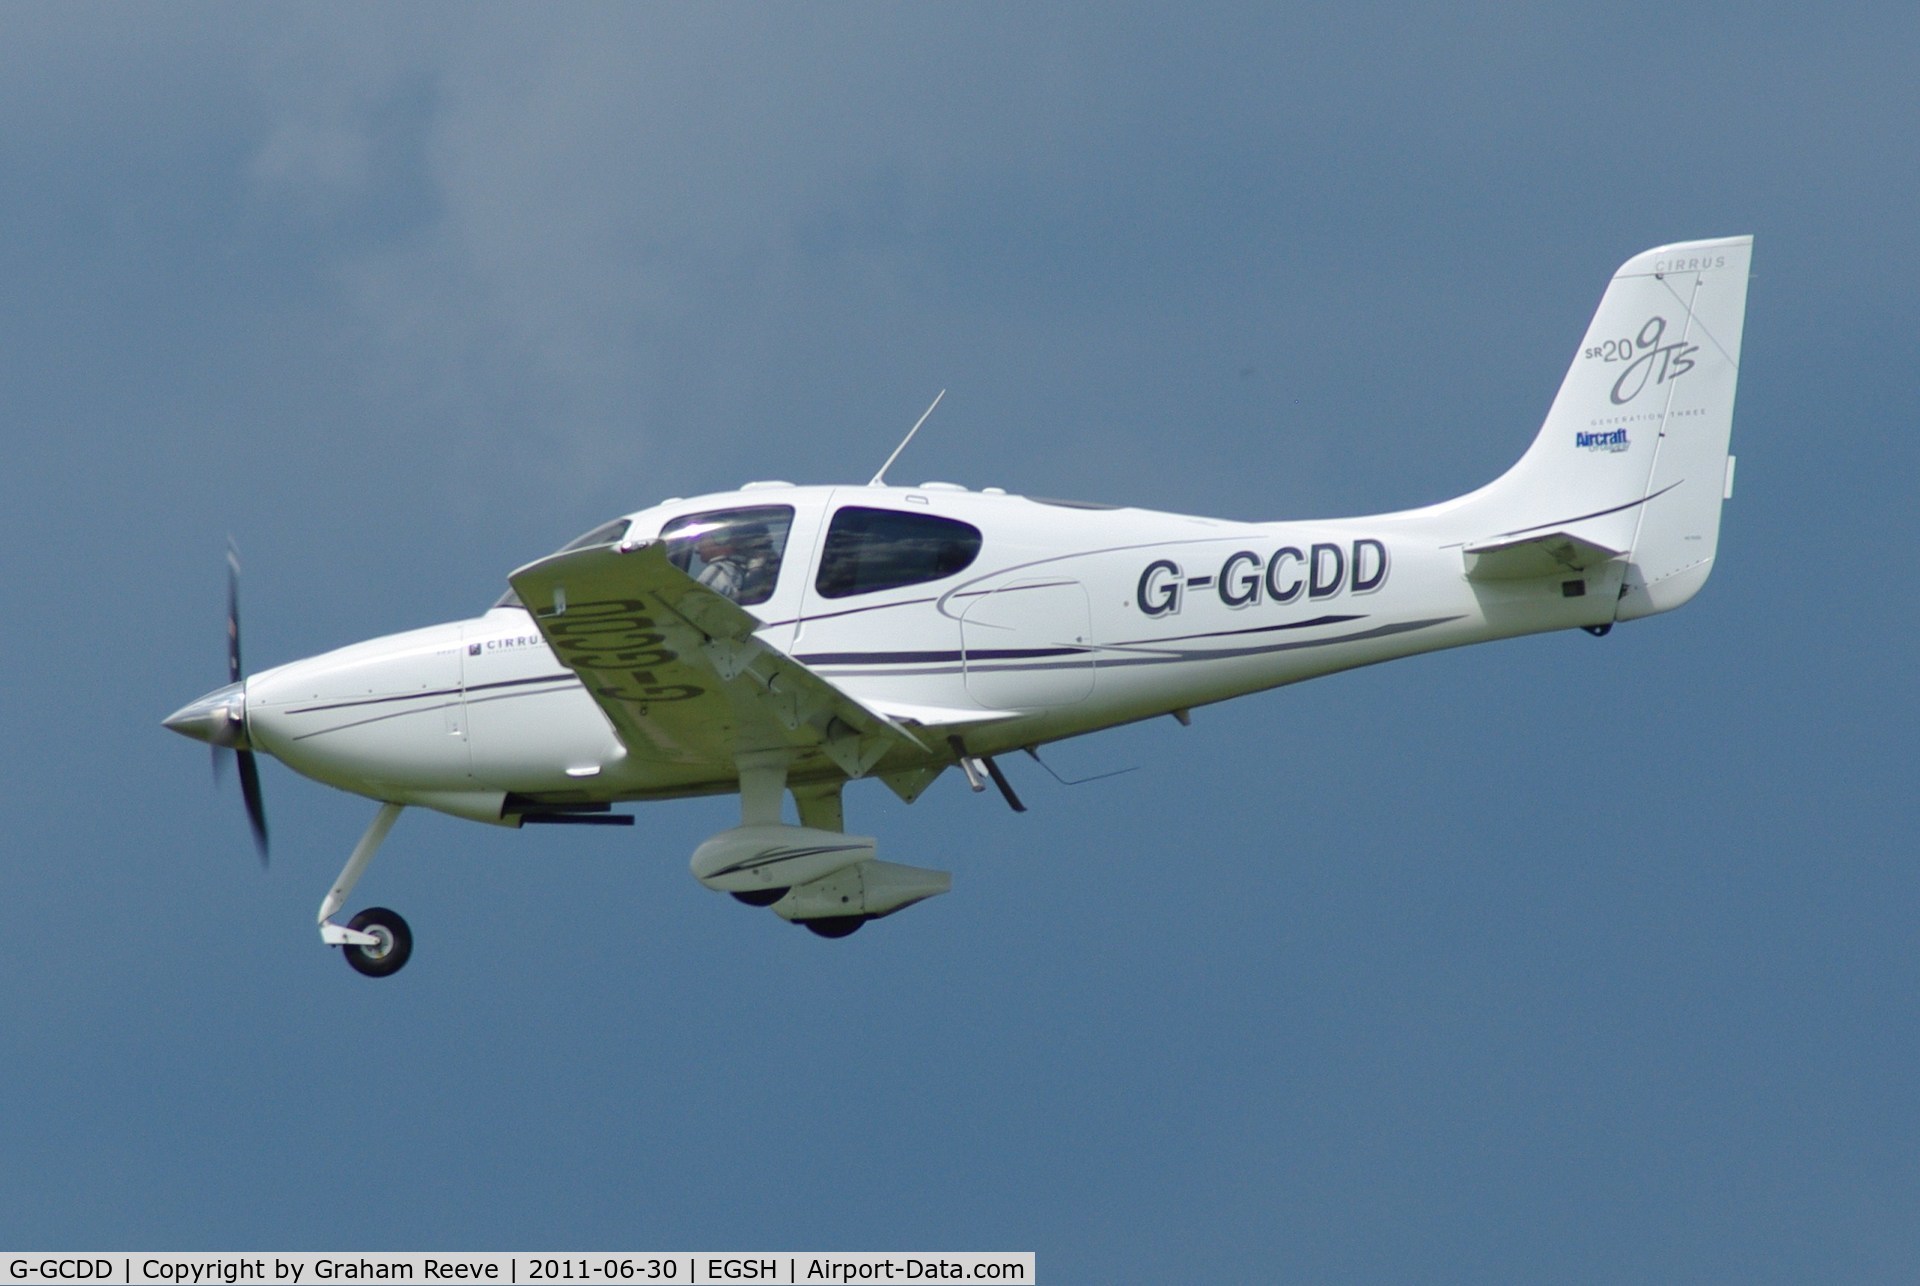 G-GCDD, 2008 Cirrus SR20 GTS G3 C/N 1972, Coming into land.